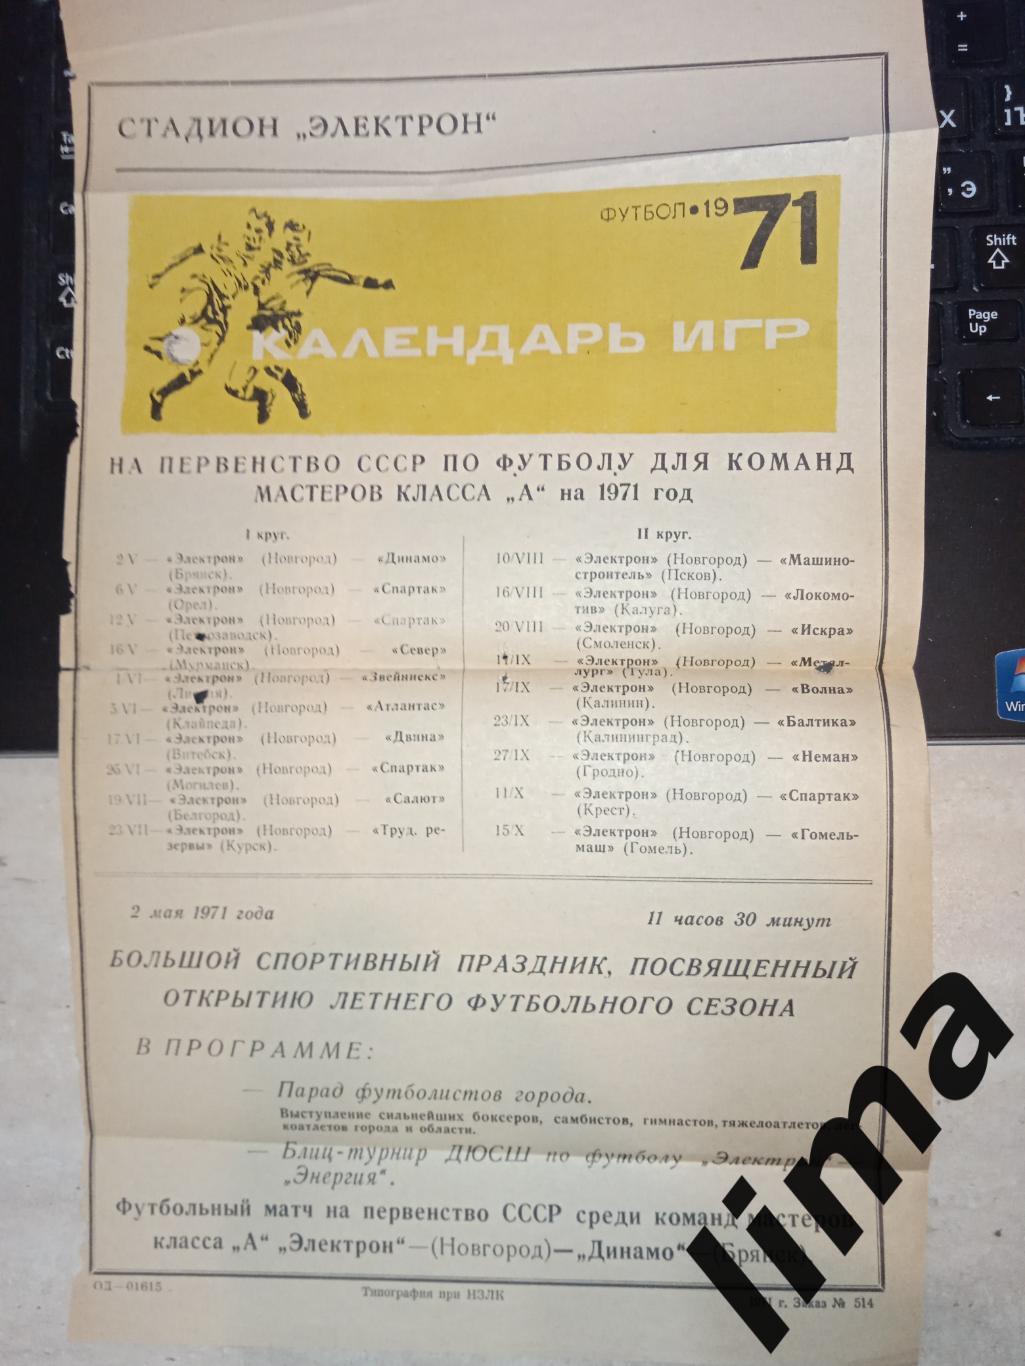 Календарь игр 1971 год Электрон Новгород,Волга Калинин,Тула,Псков,Орёл, Смоленск